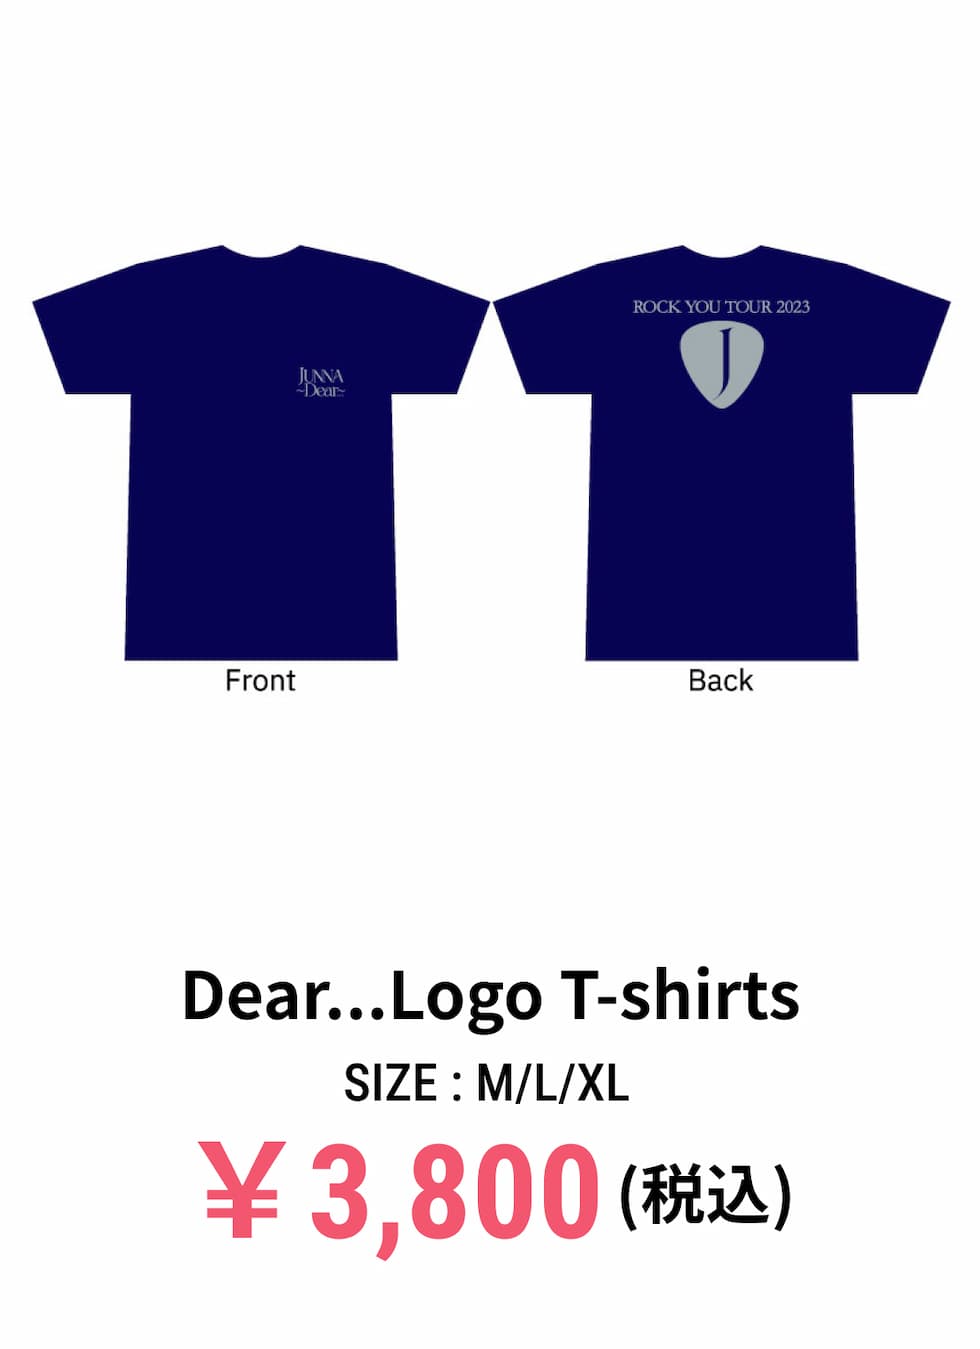 Dear...Logo T-shirts